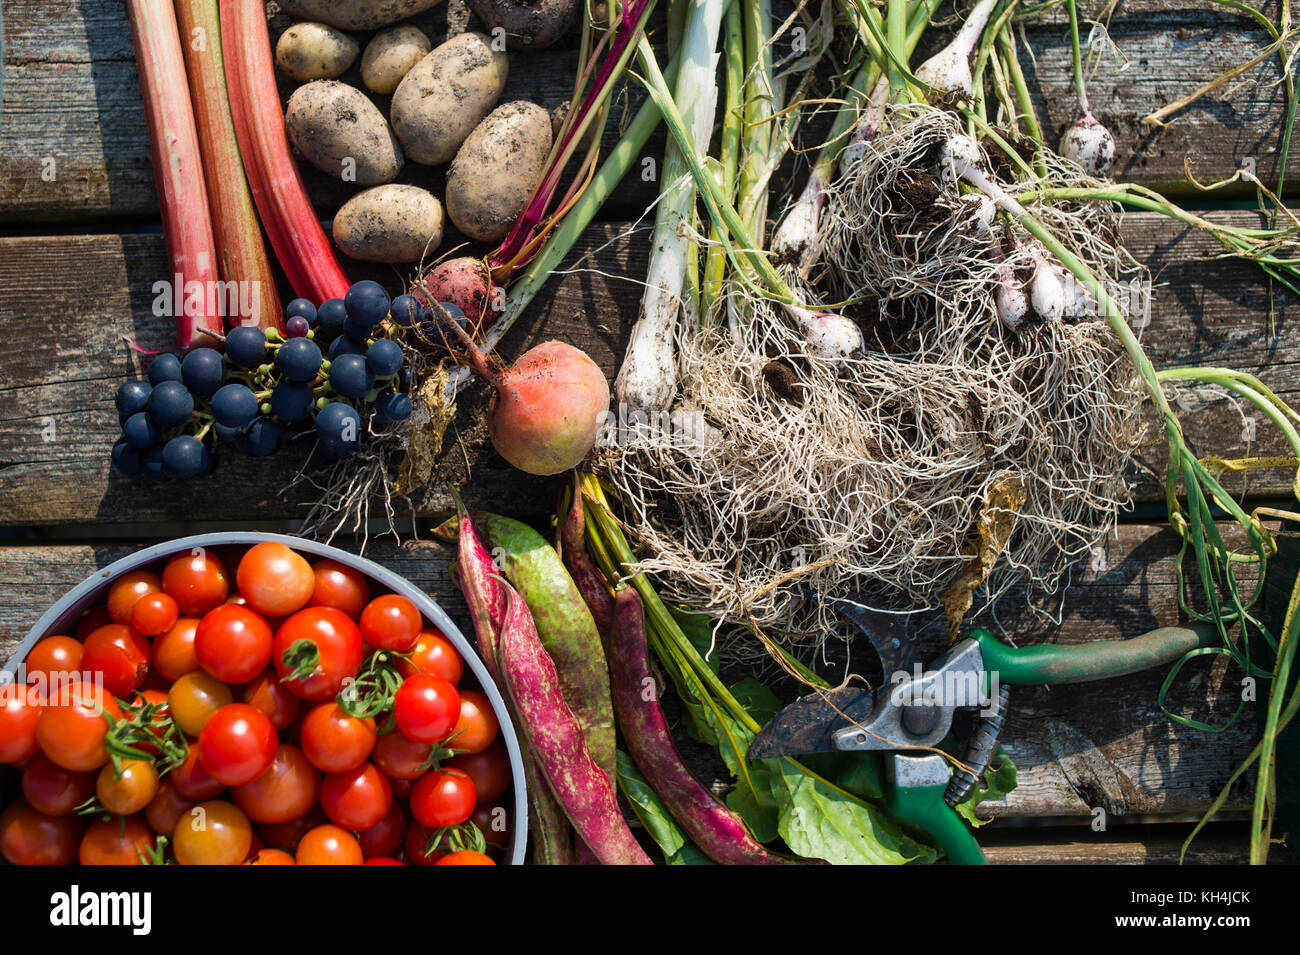 Appena raccolto di frutta e verdura steso su un banco di lavoro su un riparto giardino, aberystwyth wales uk (cipolle, uva, pomodori, fave, rabarbaro, patate) Foto Stock